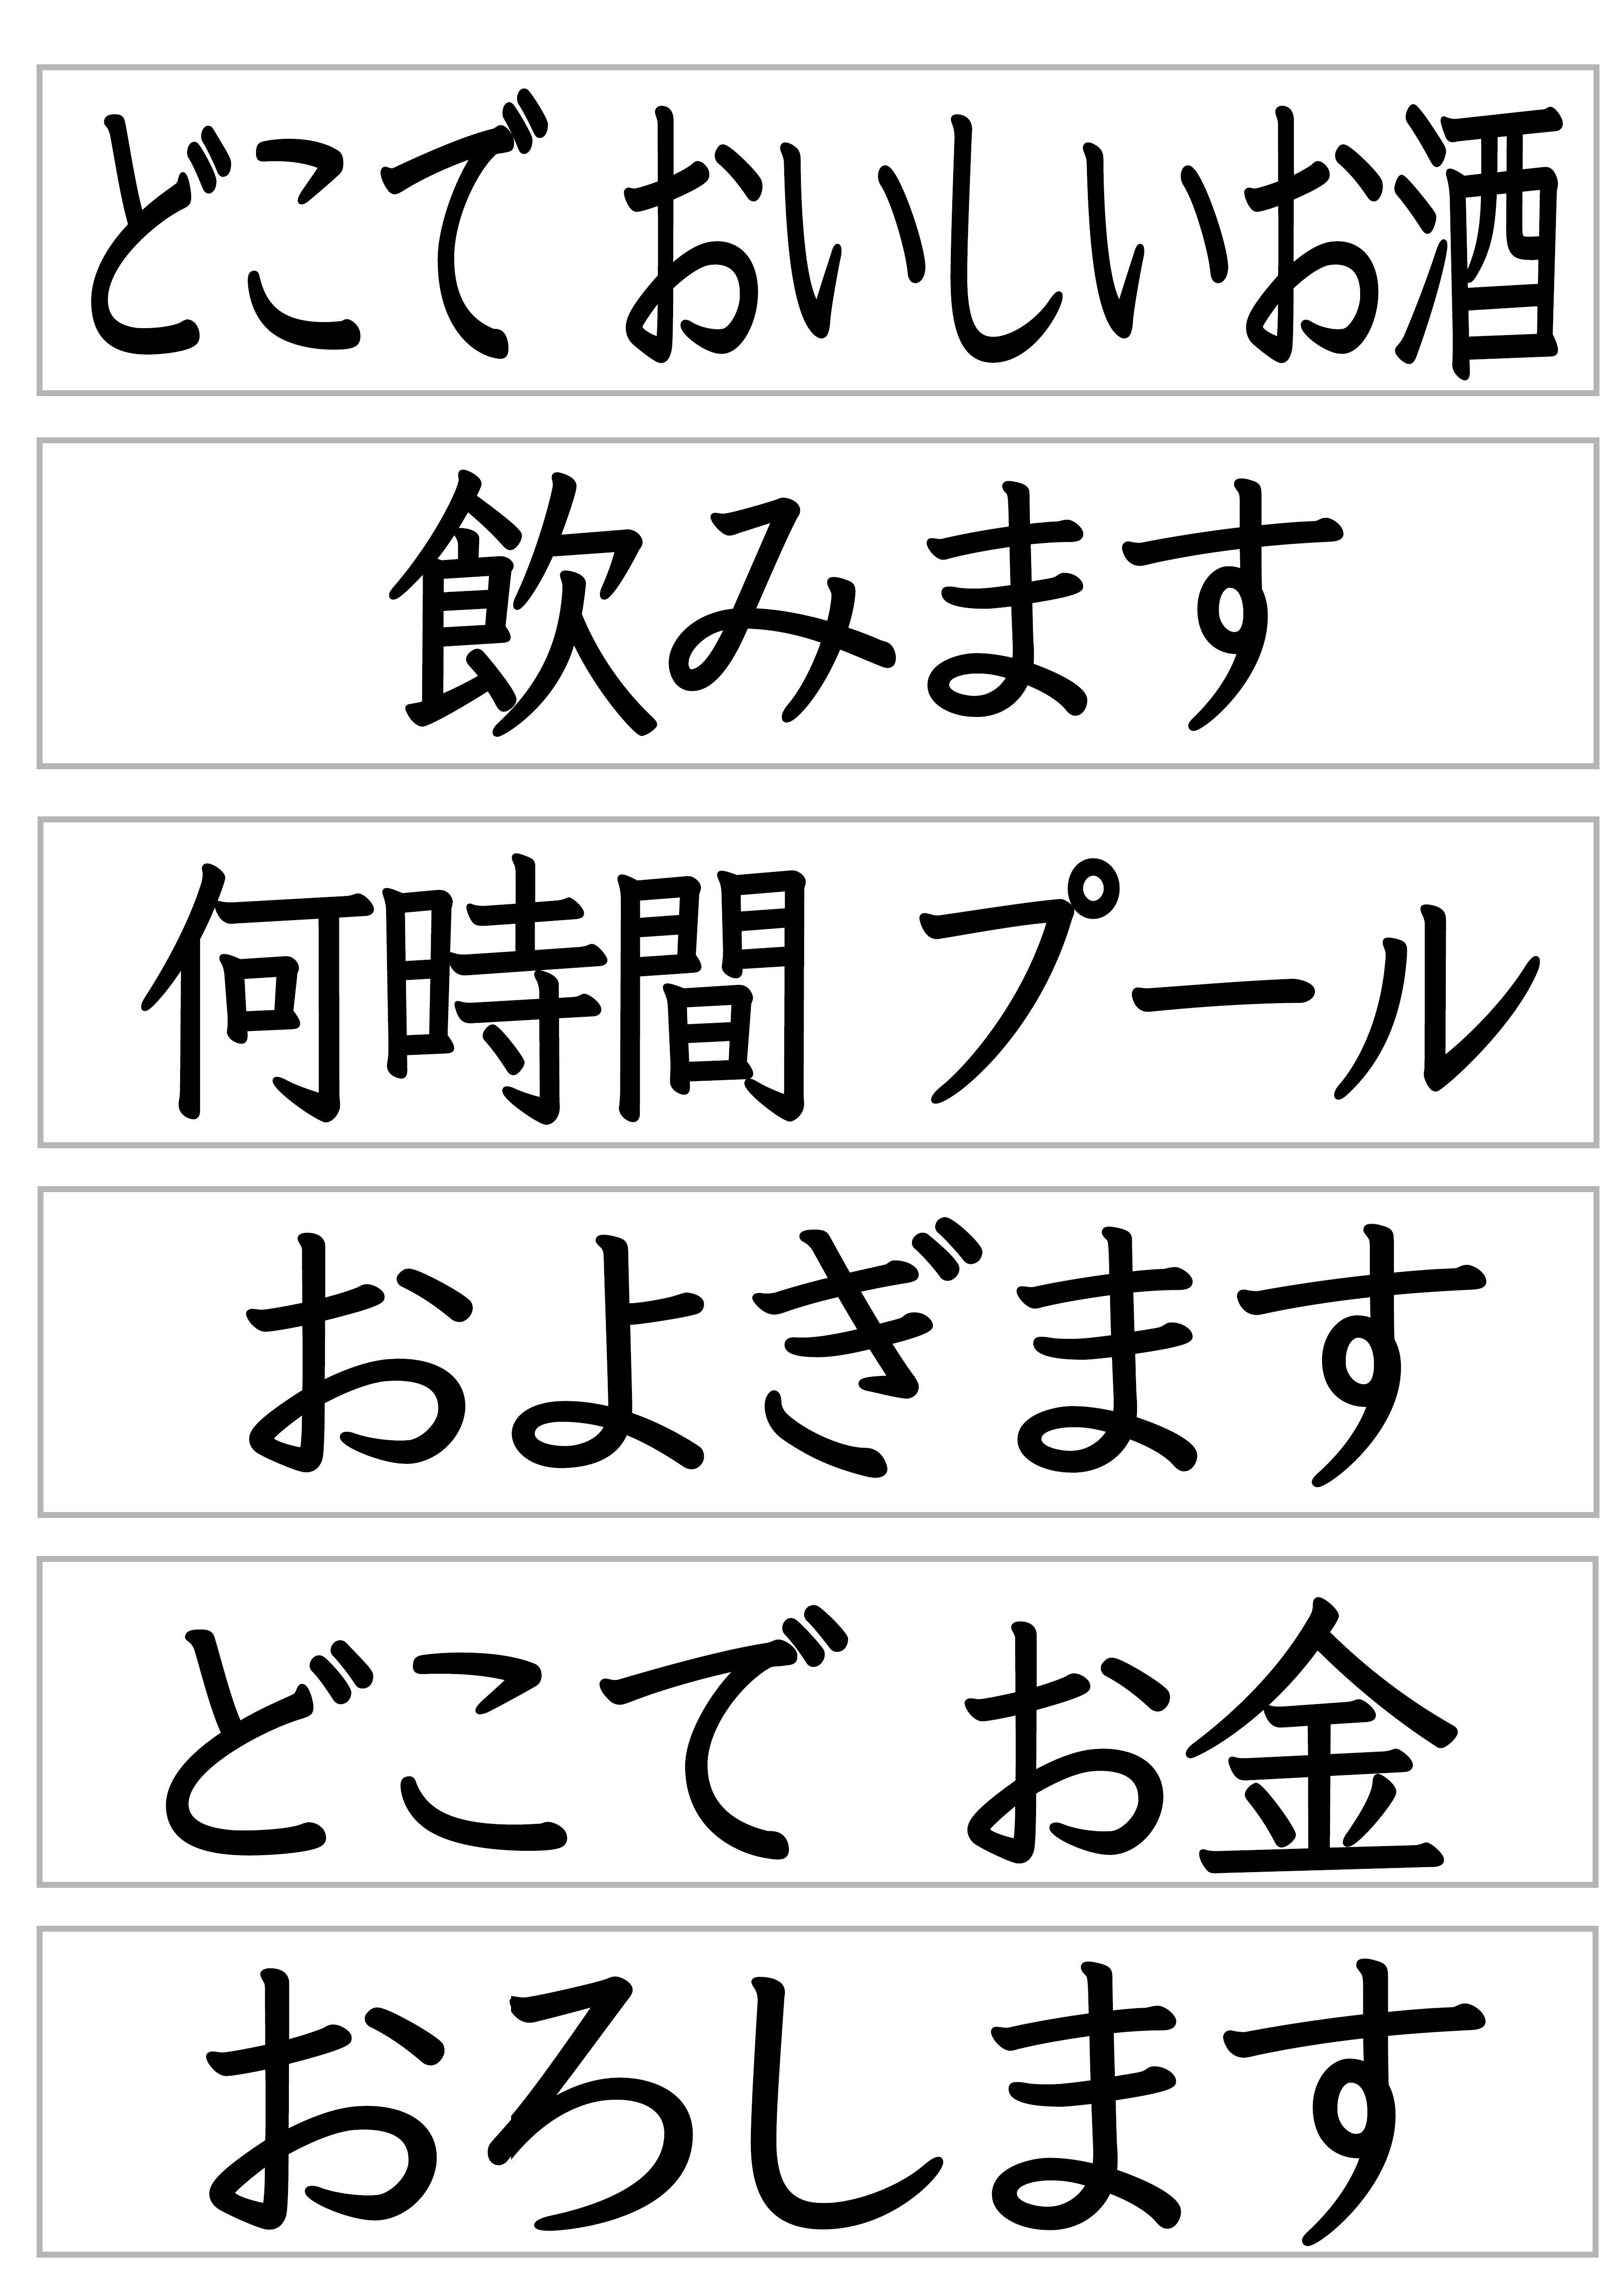 みんなの日本語27課文字カード